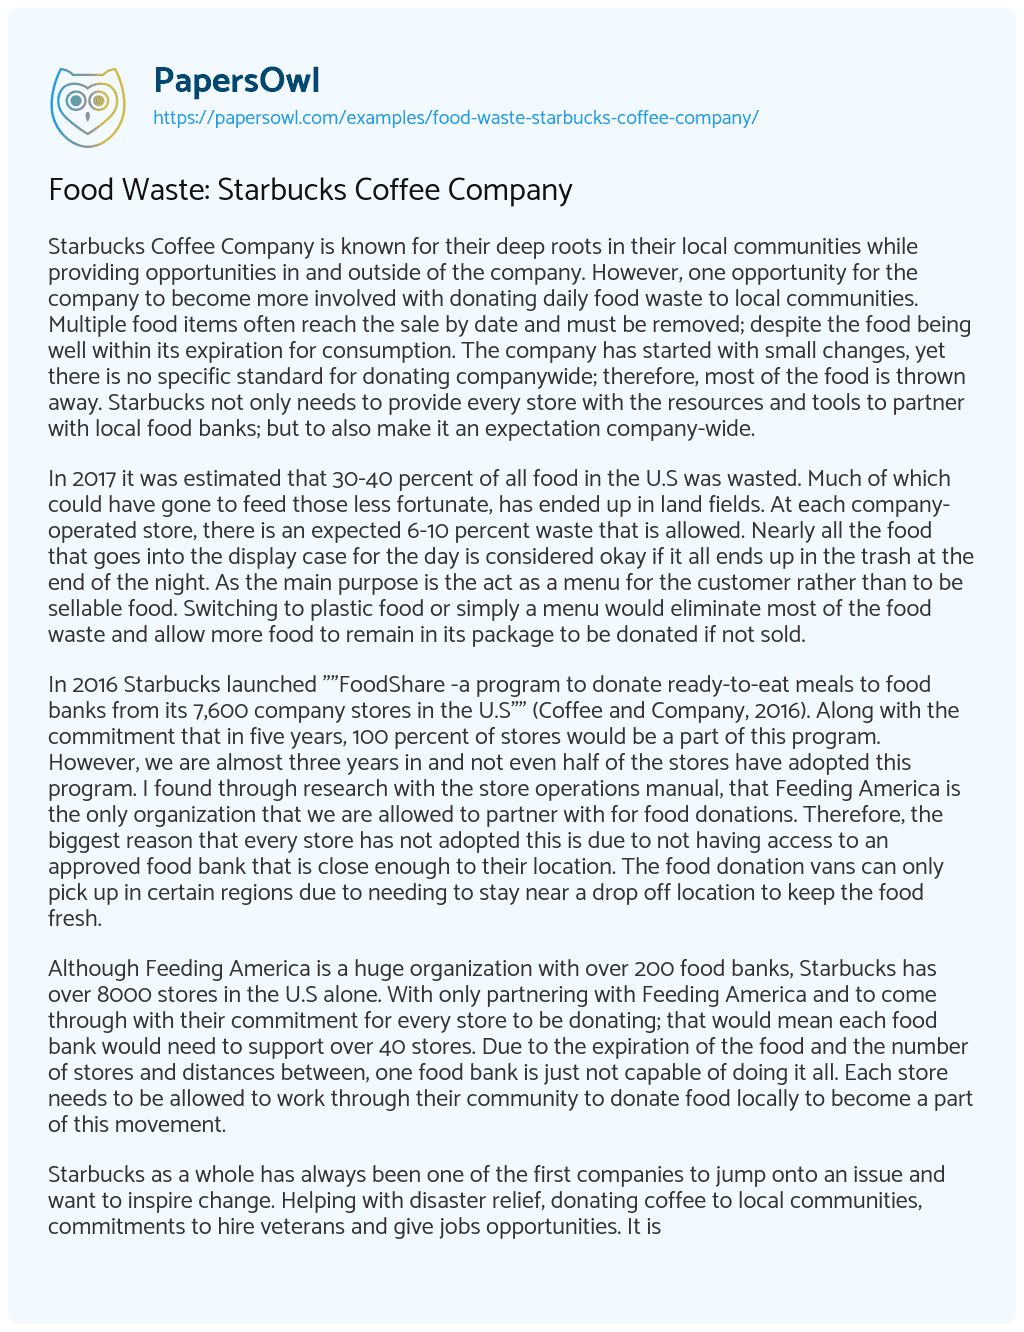 Essay on Food Waste: Starbucks Coffee Company